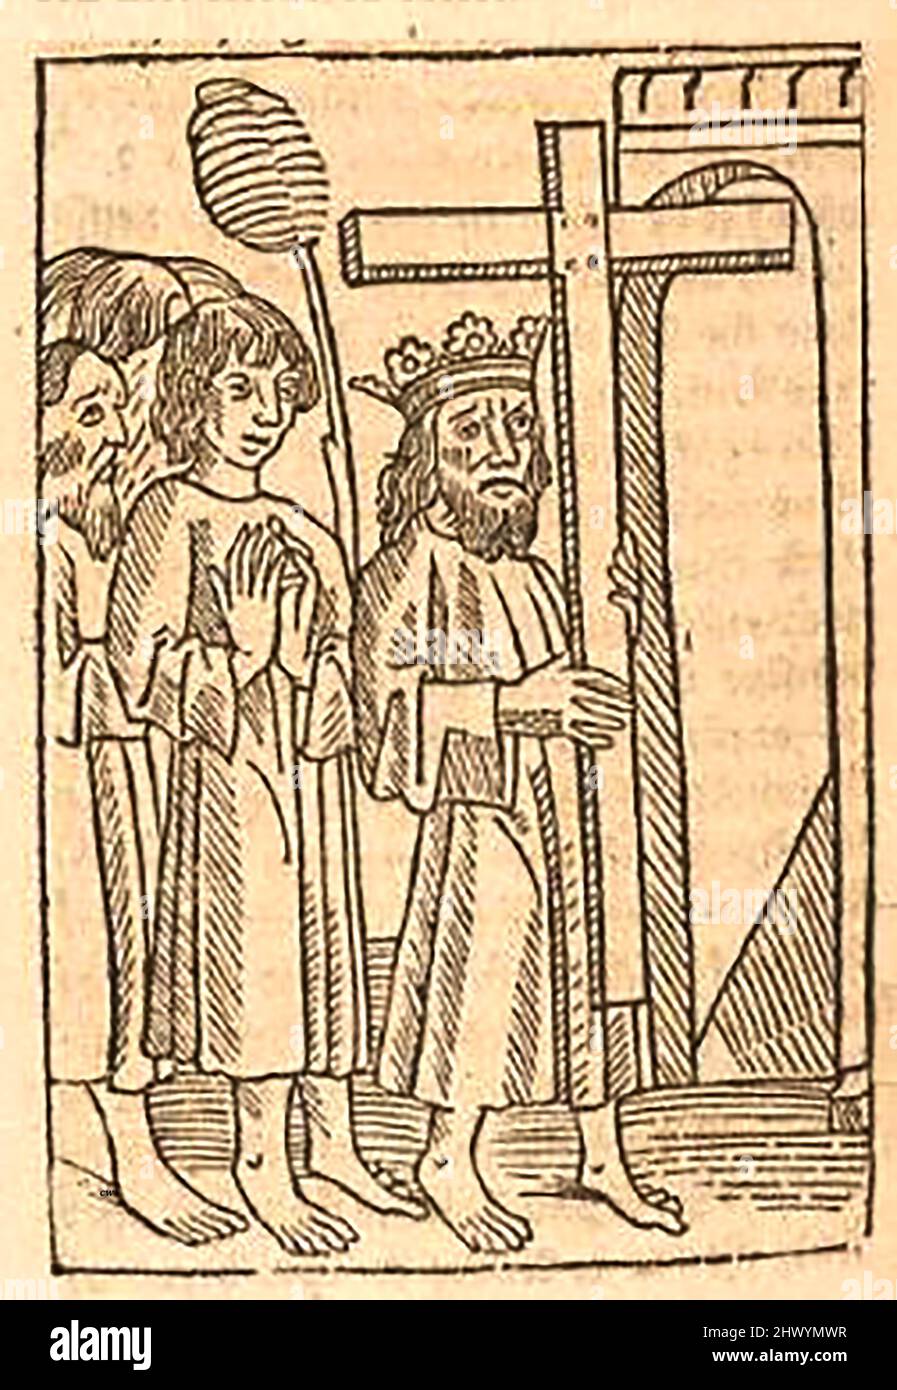 Holzschnitt aus dem 15.. Jahrhundert, der die Verherrlichung des wahren Kreuzes zeigt, das William Caxton ( 1422-1491/92) in seiner Übersetzung von 'die goldene Legende' oder 'so endet die legende, die in Latyn legenda aurea genannt wird, das heißt in Englysshe die goldene legende zu sagen' von Jacobus, de Voragine (um 1229-1298). Stockfoto